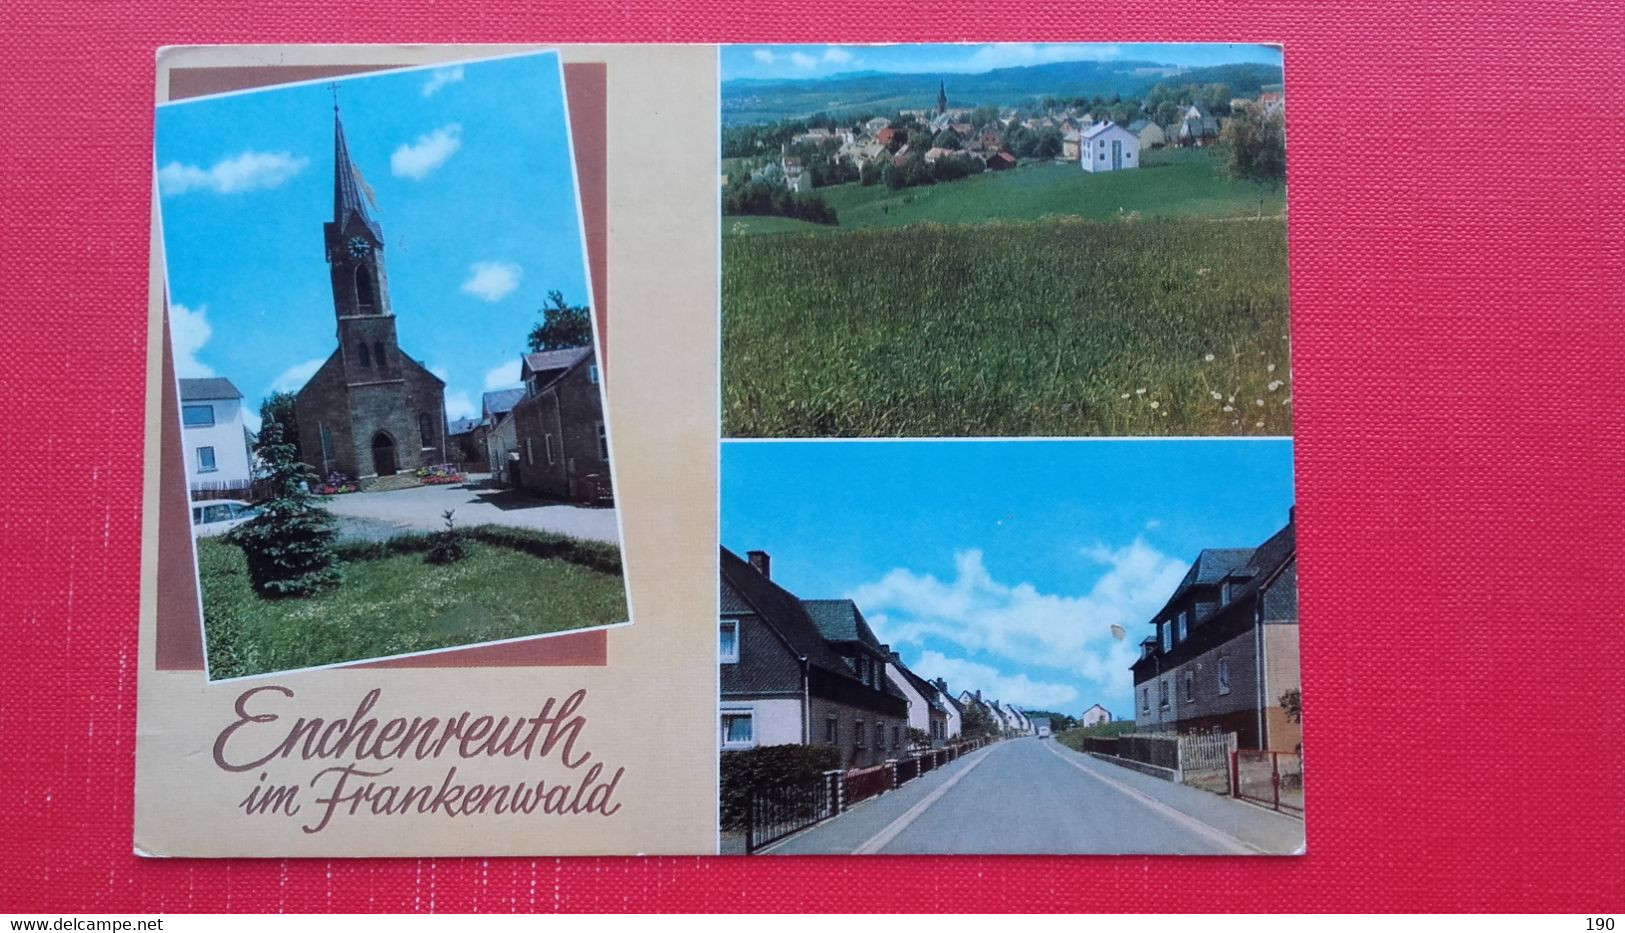 Enchenreuth Im Frankenwald - Helmbrechts